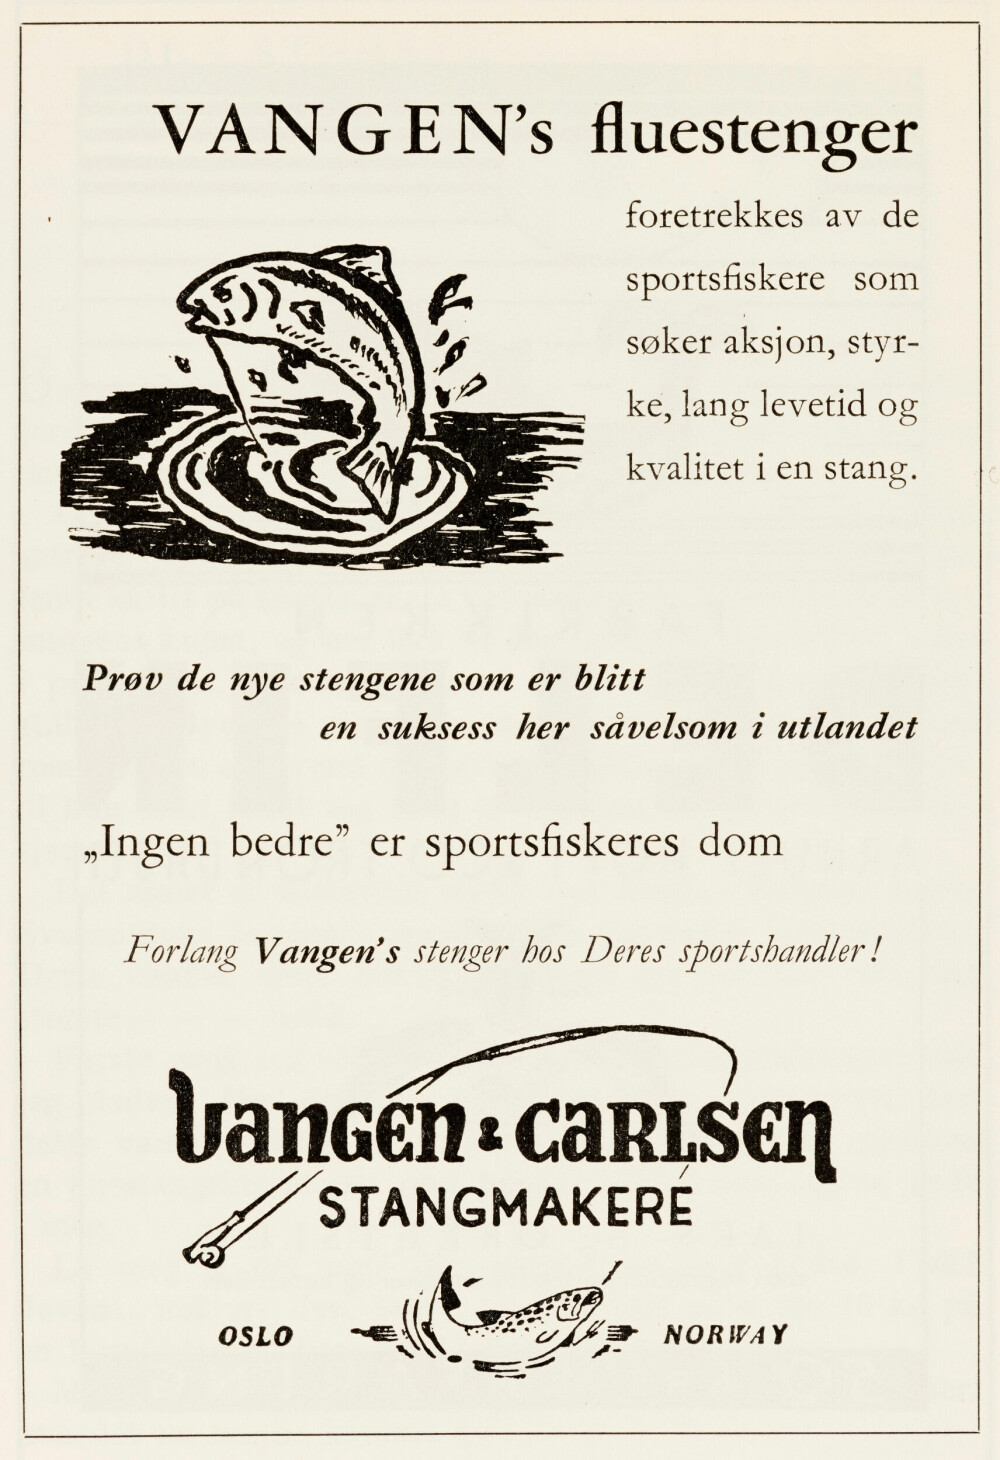 ANNONSE: Vangen fluestenger ble hyppig reklamert for. Denne annonsen sto i Stangfiskeren, utgitt av Oslo Sportsfiskere i 1960. (Foto: Norsk Skogmuseum)